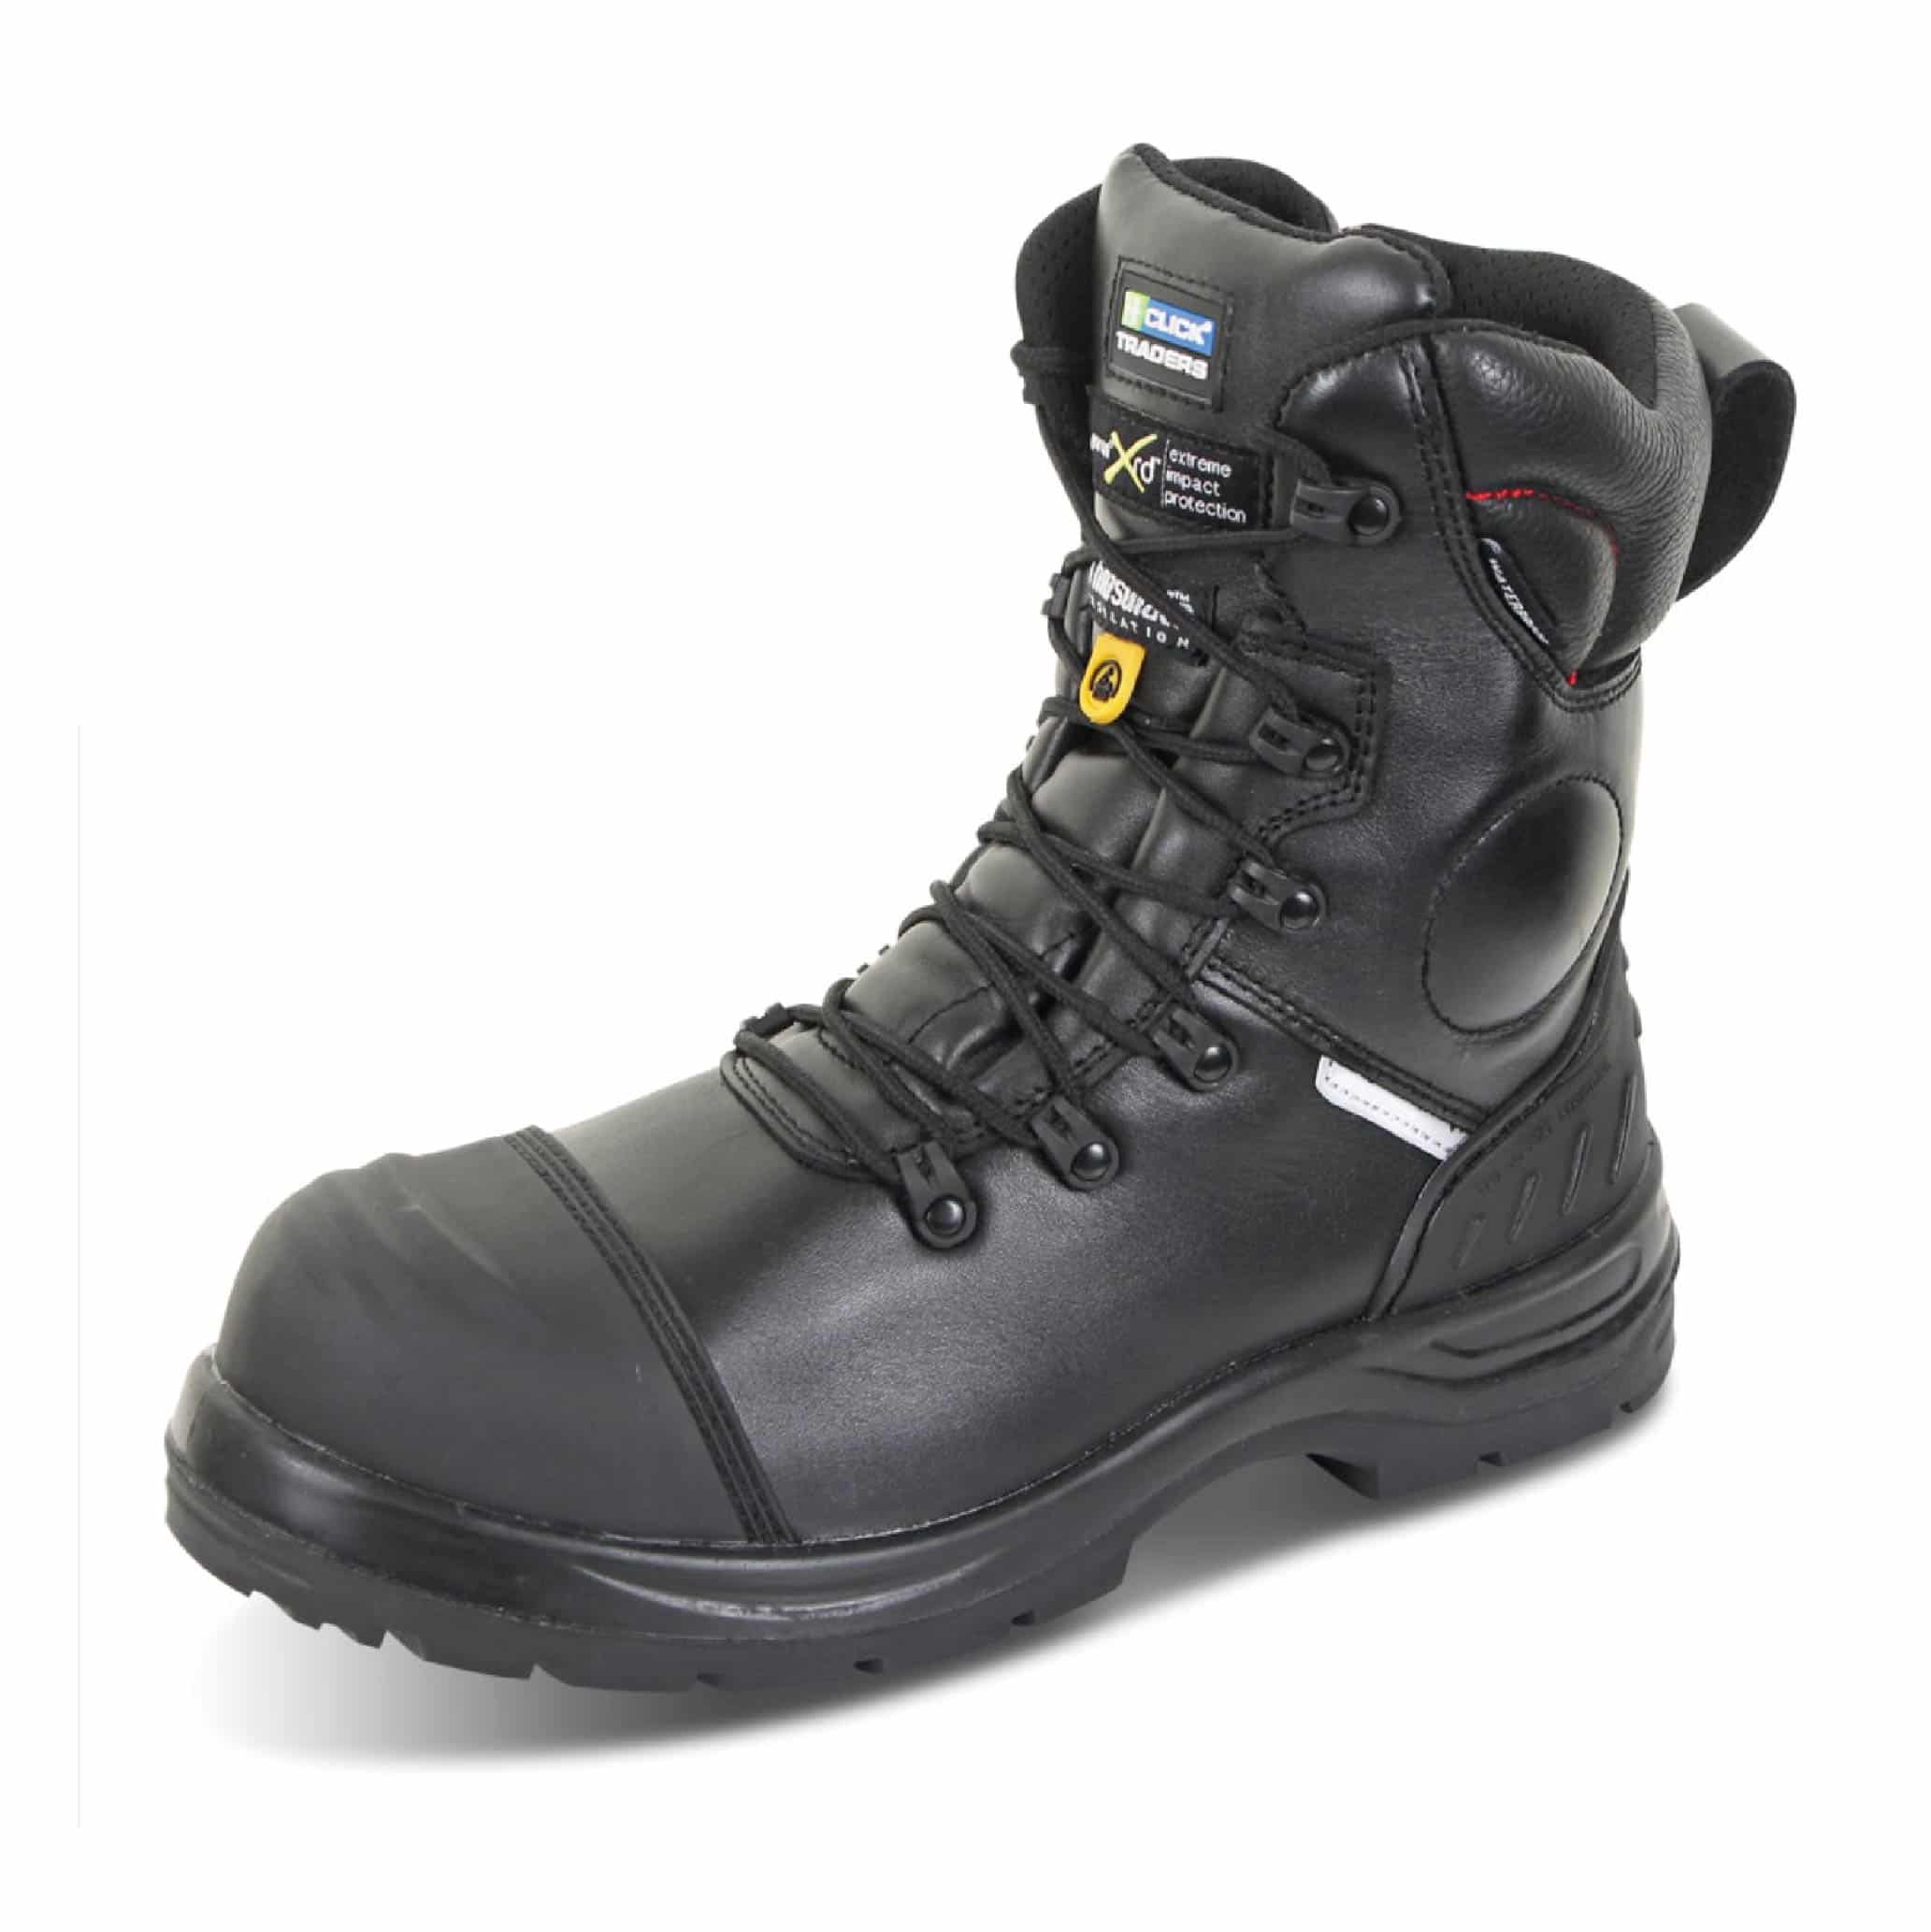 Higher Met boot with rubber cap and side Zip